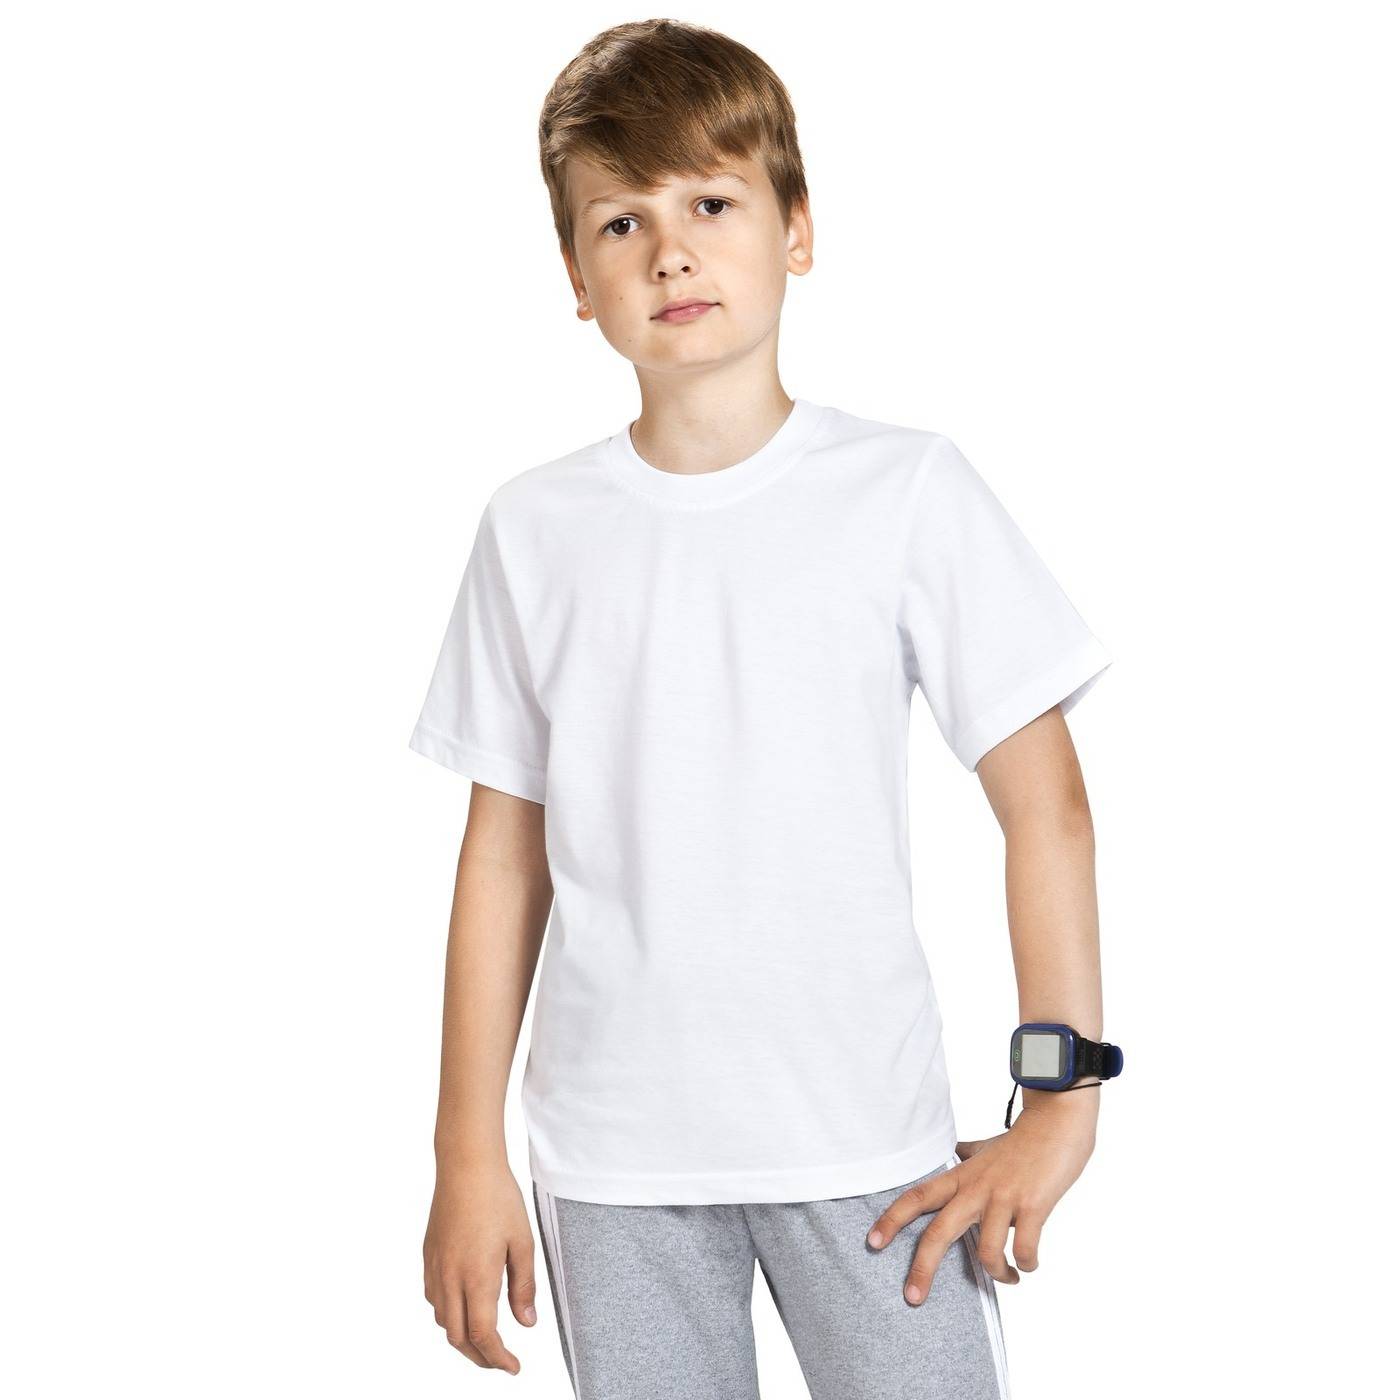 Белая детская футболка купить. "Детская белая футболка". Мальчик в белой футболке. Футболка детская белая для мальчика. Белые футболки детские.